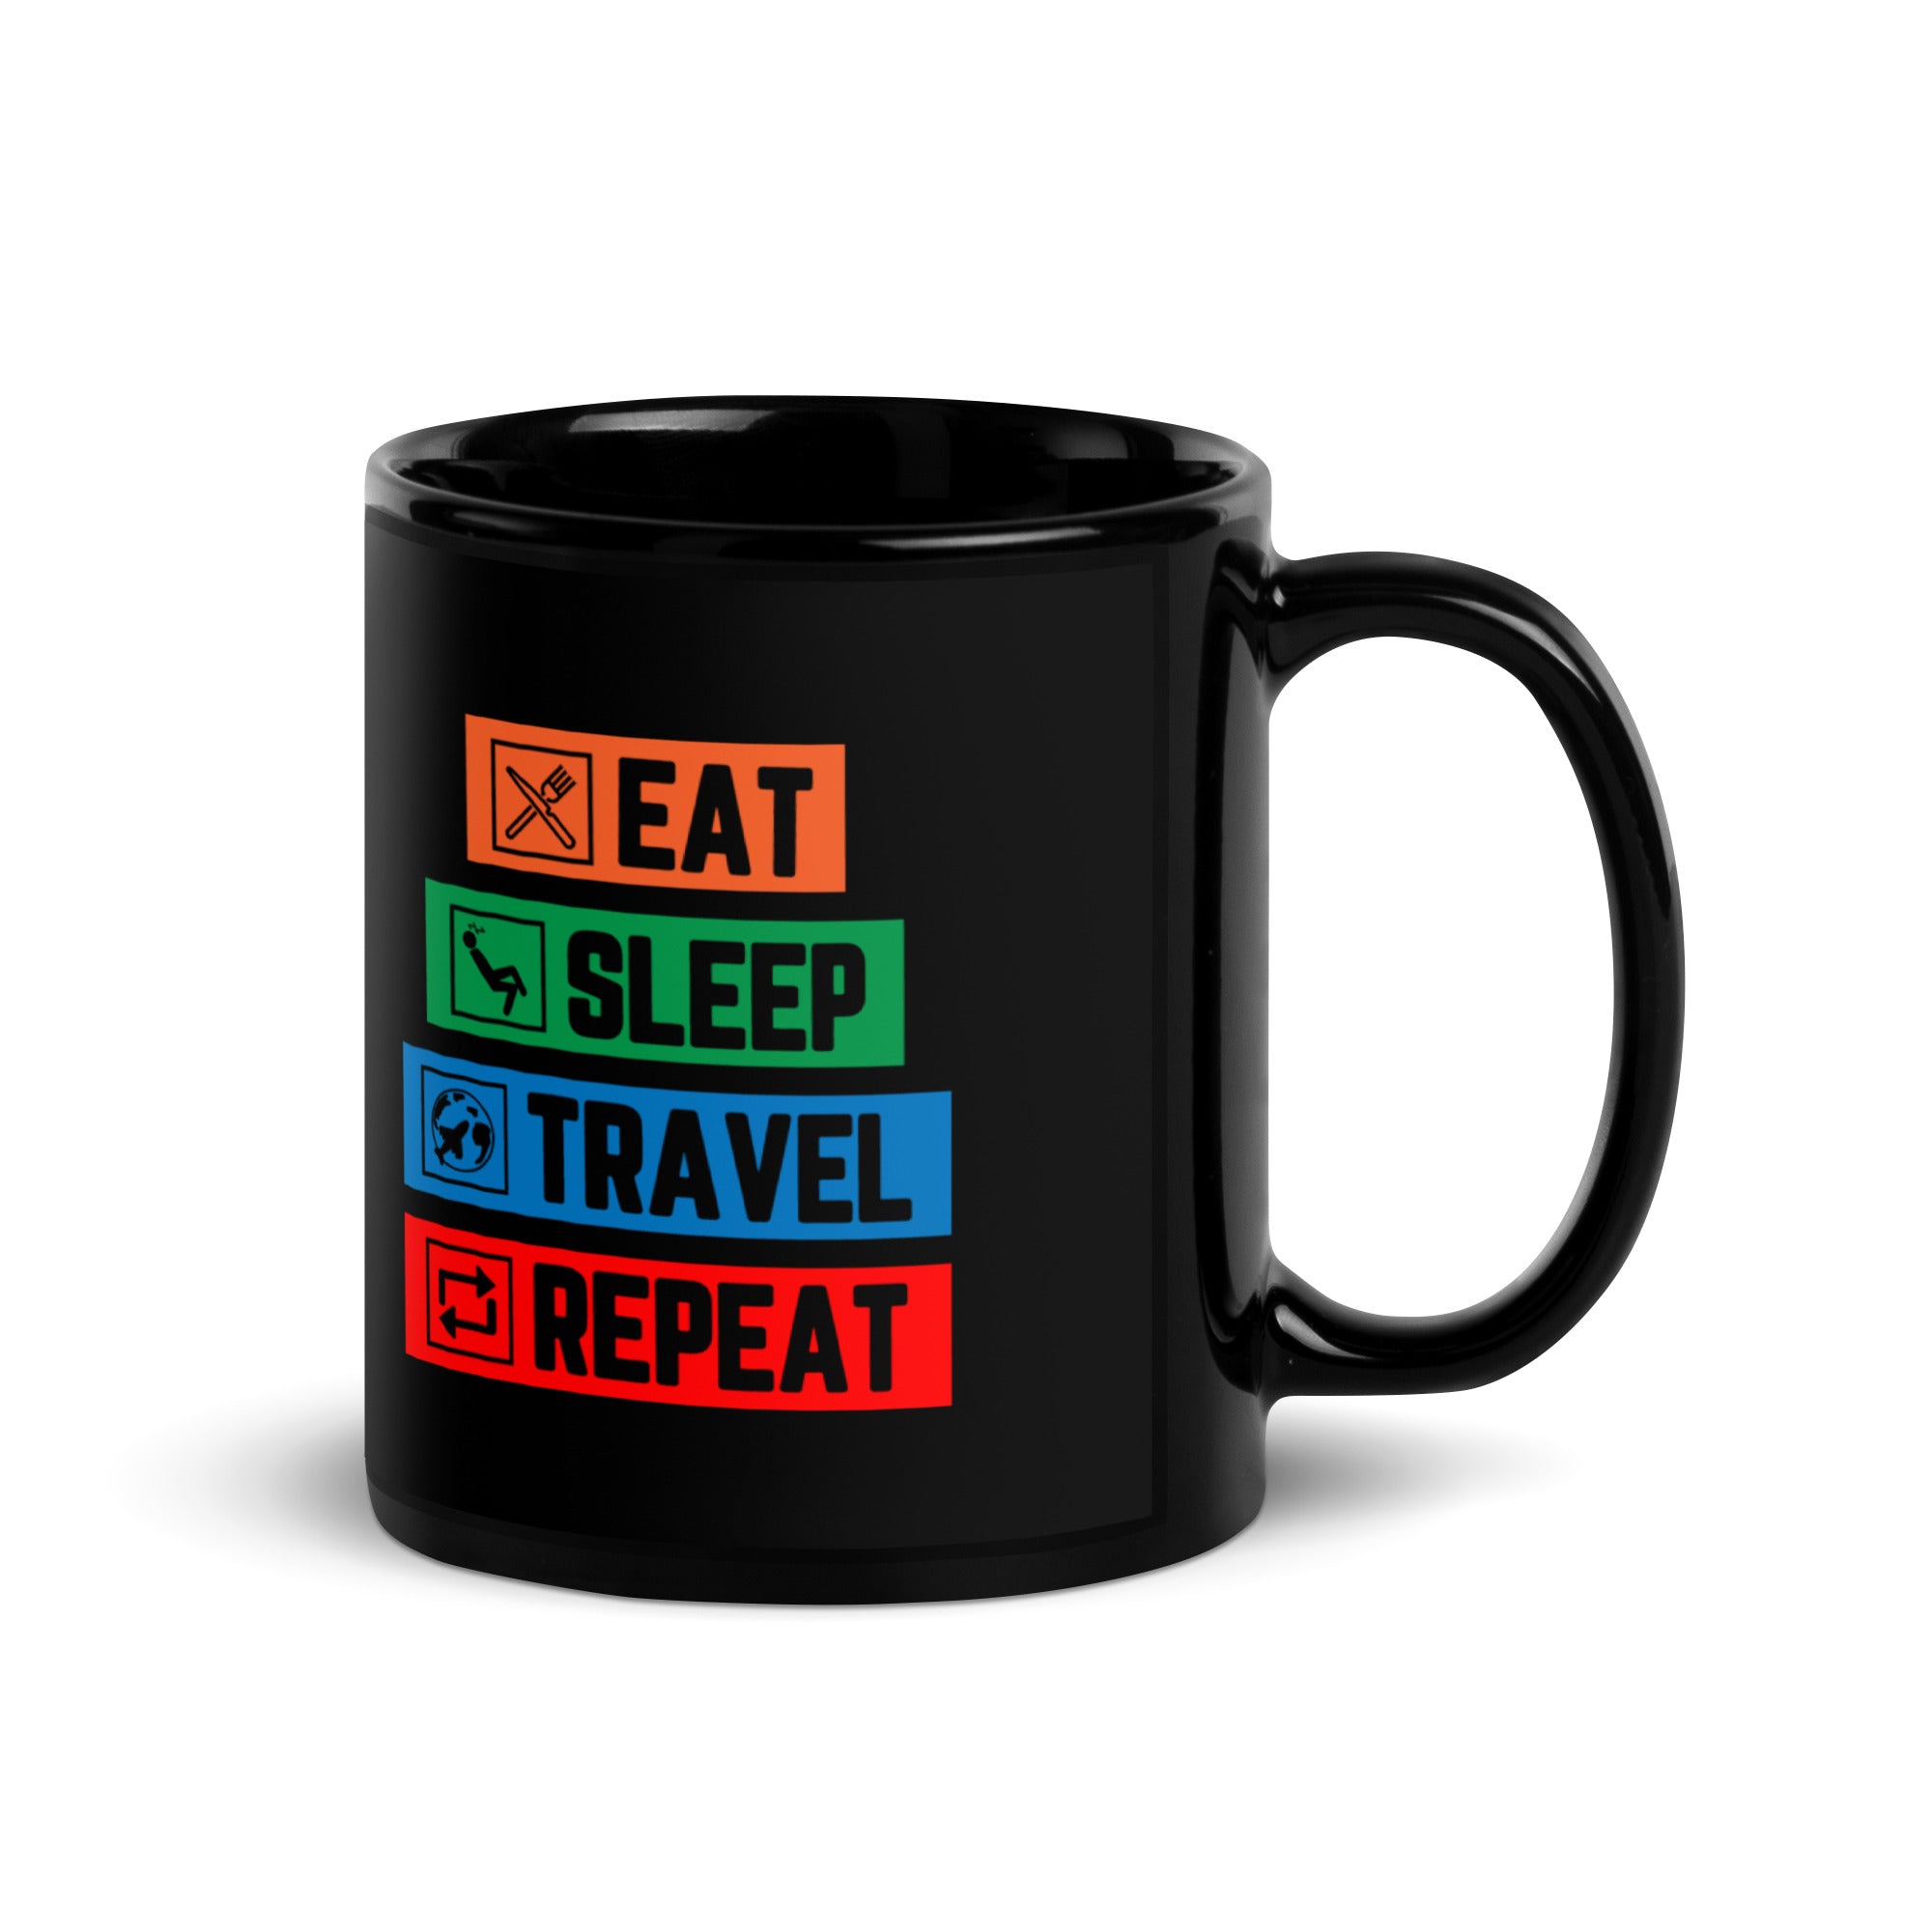 Eat Sleep Travel Repeat - Black Mug